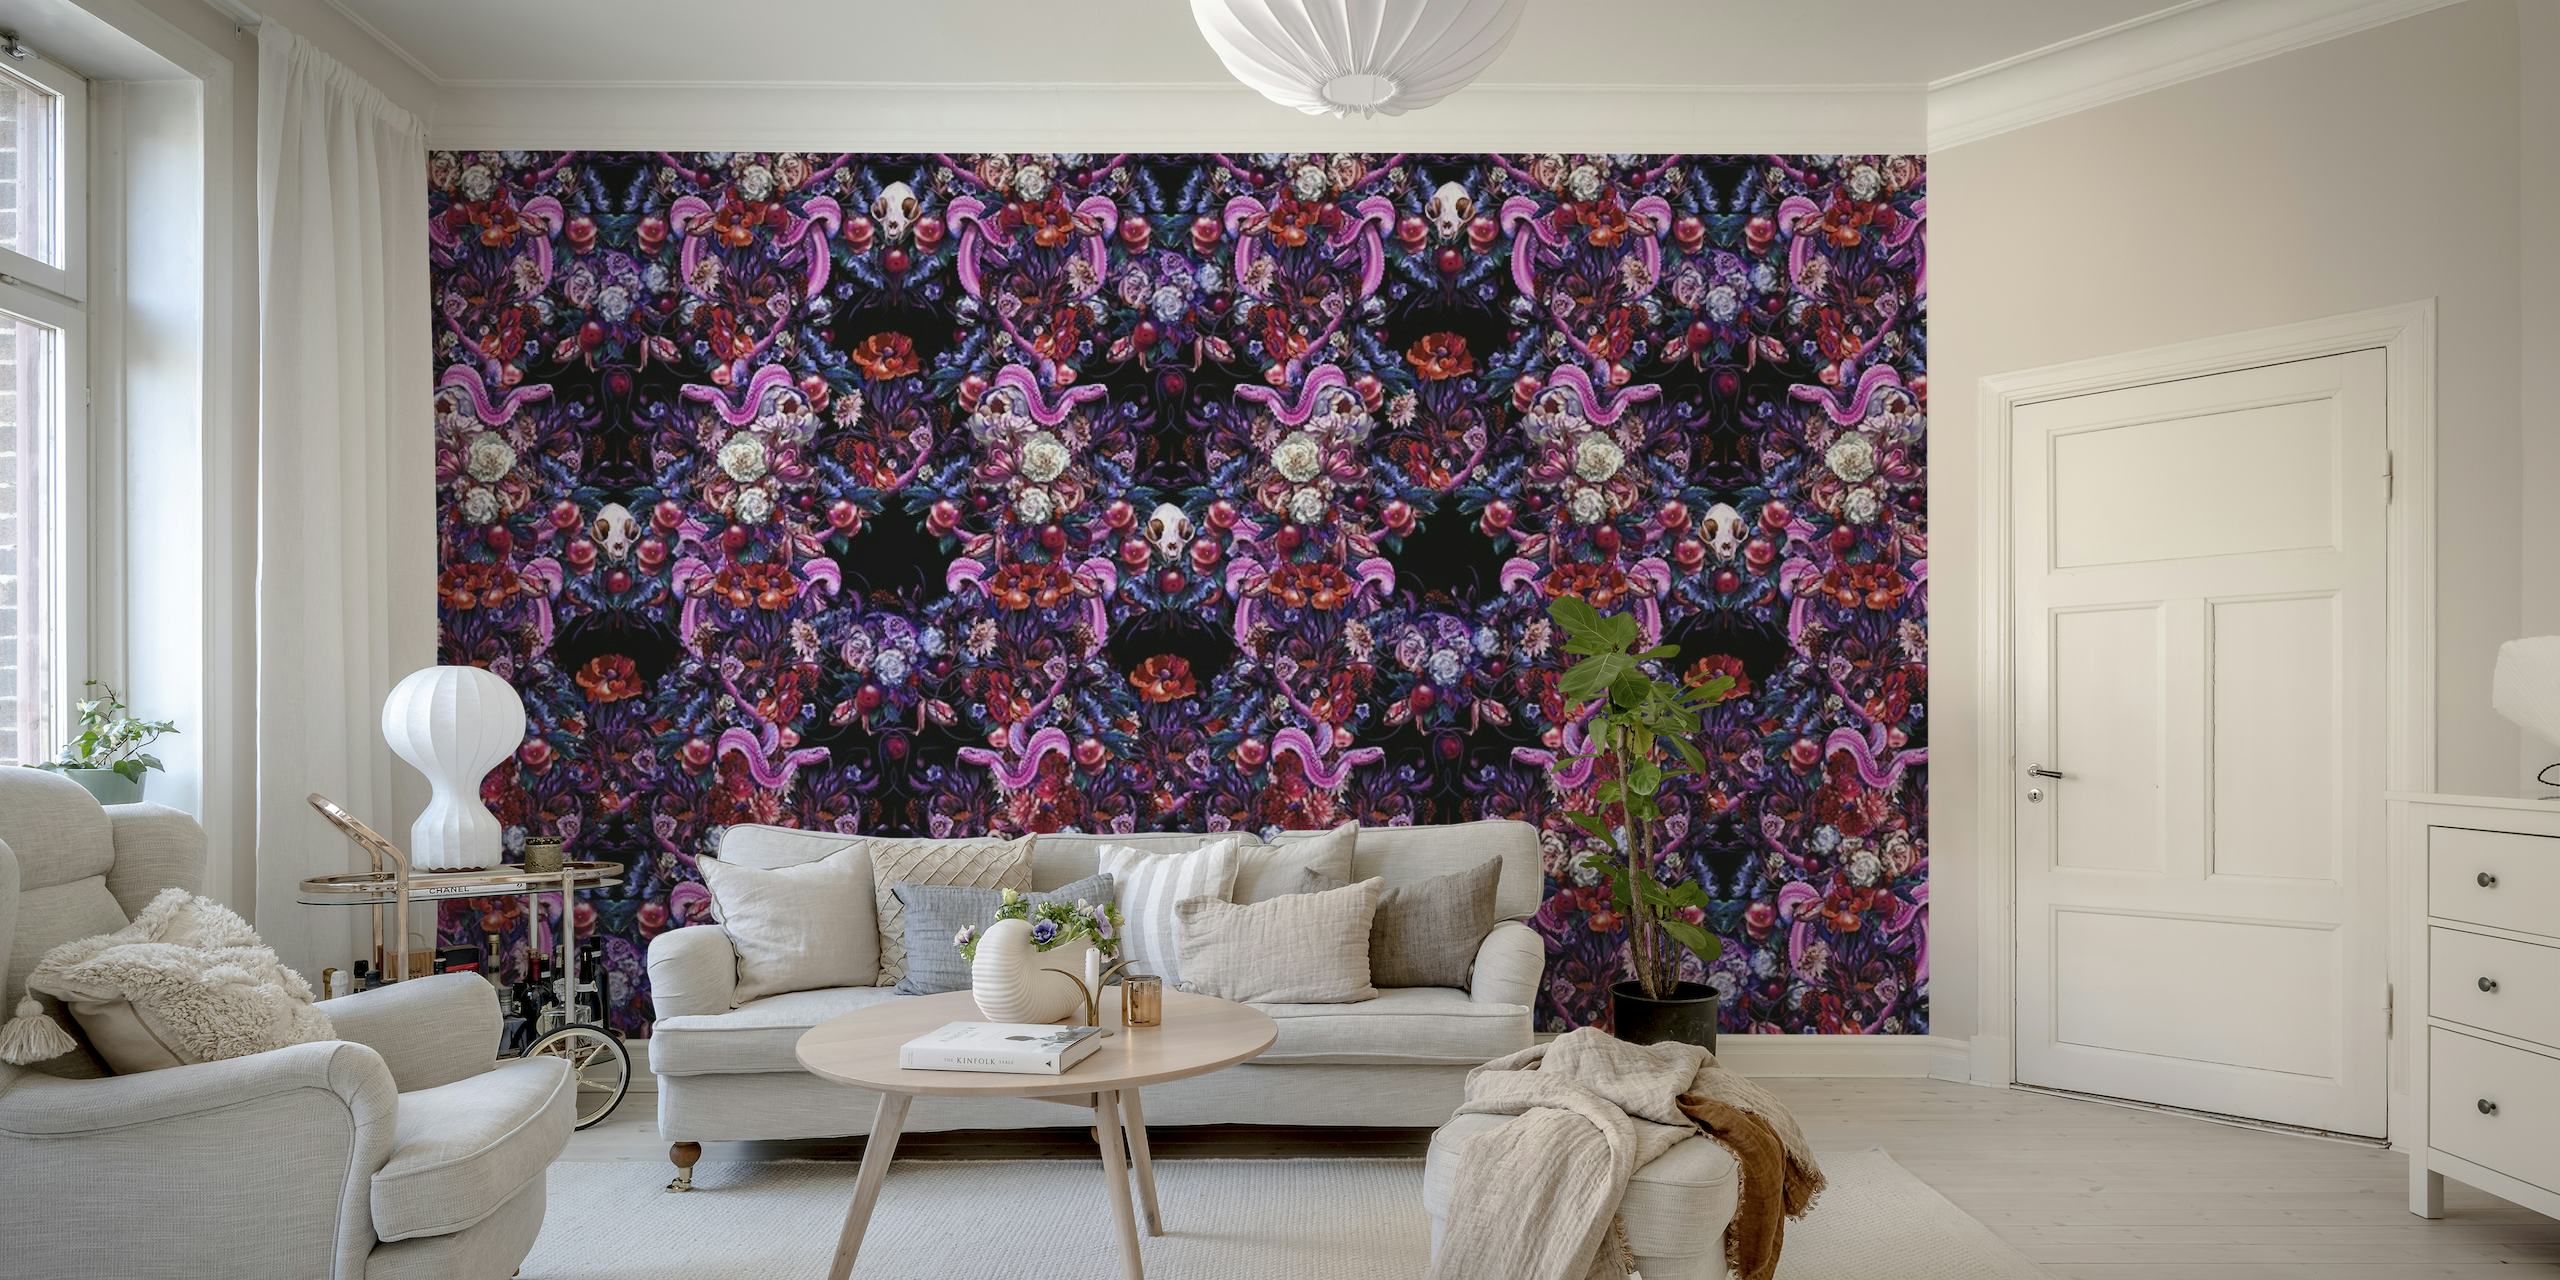 Zidna slika nadahnuta gotikom sa simetričnim uzorkom zmija, lubanja i cvijeća u nijansama ljubičaste, ružičaste i plave